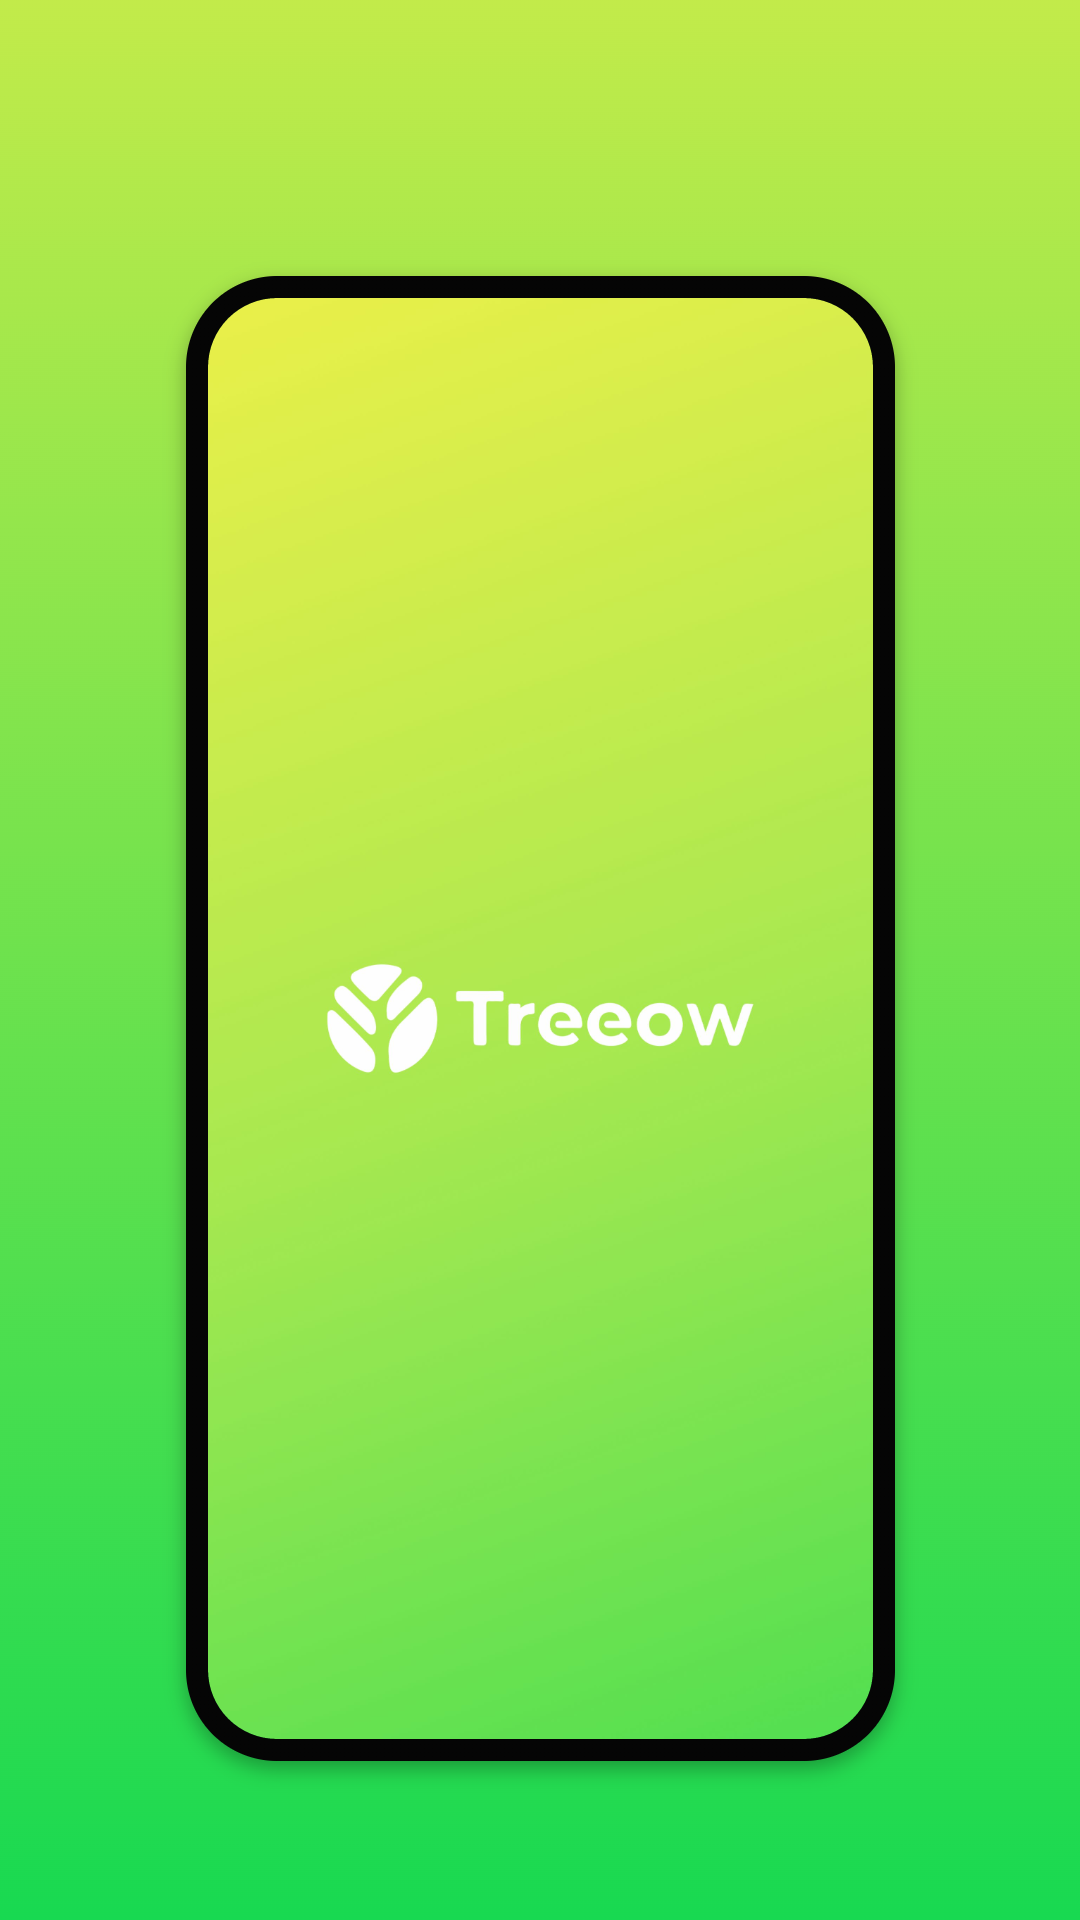 Treeow